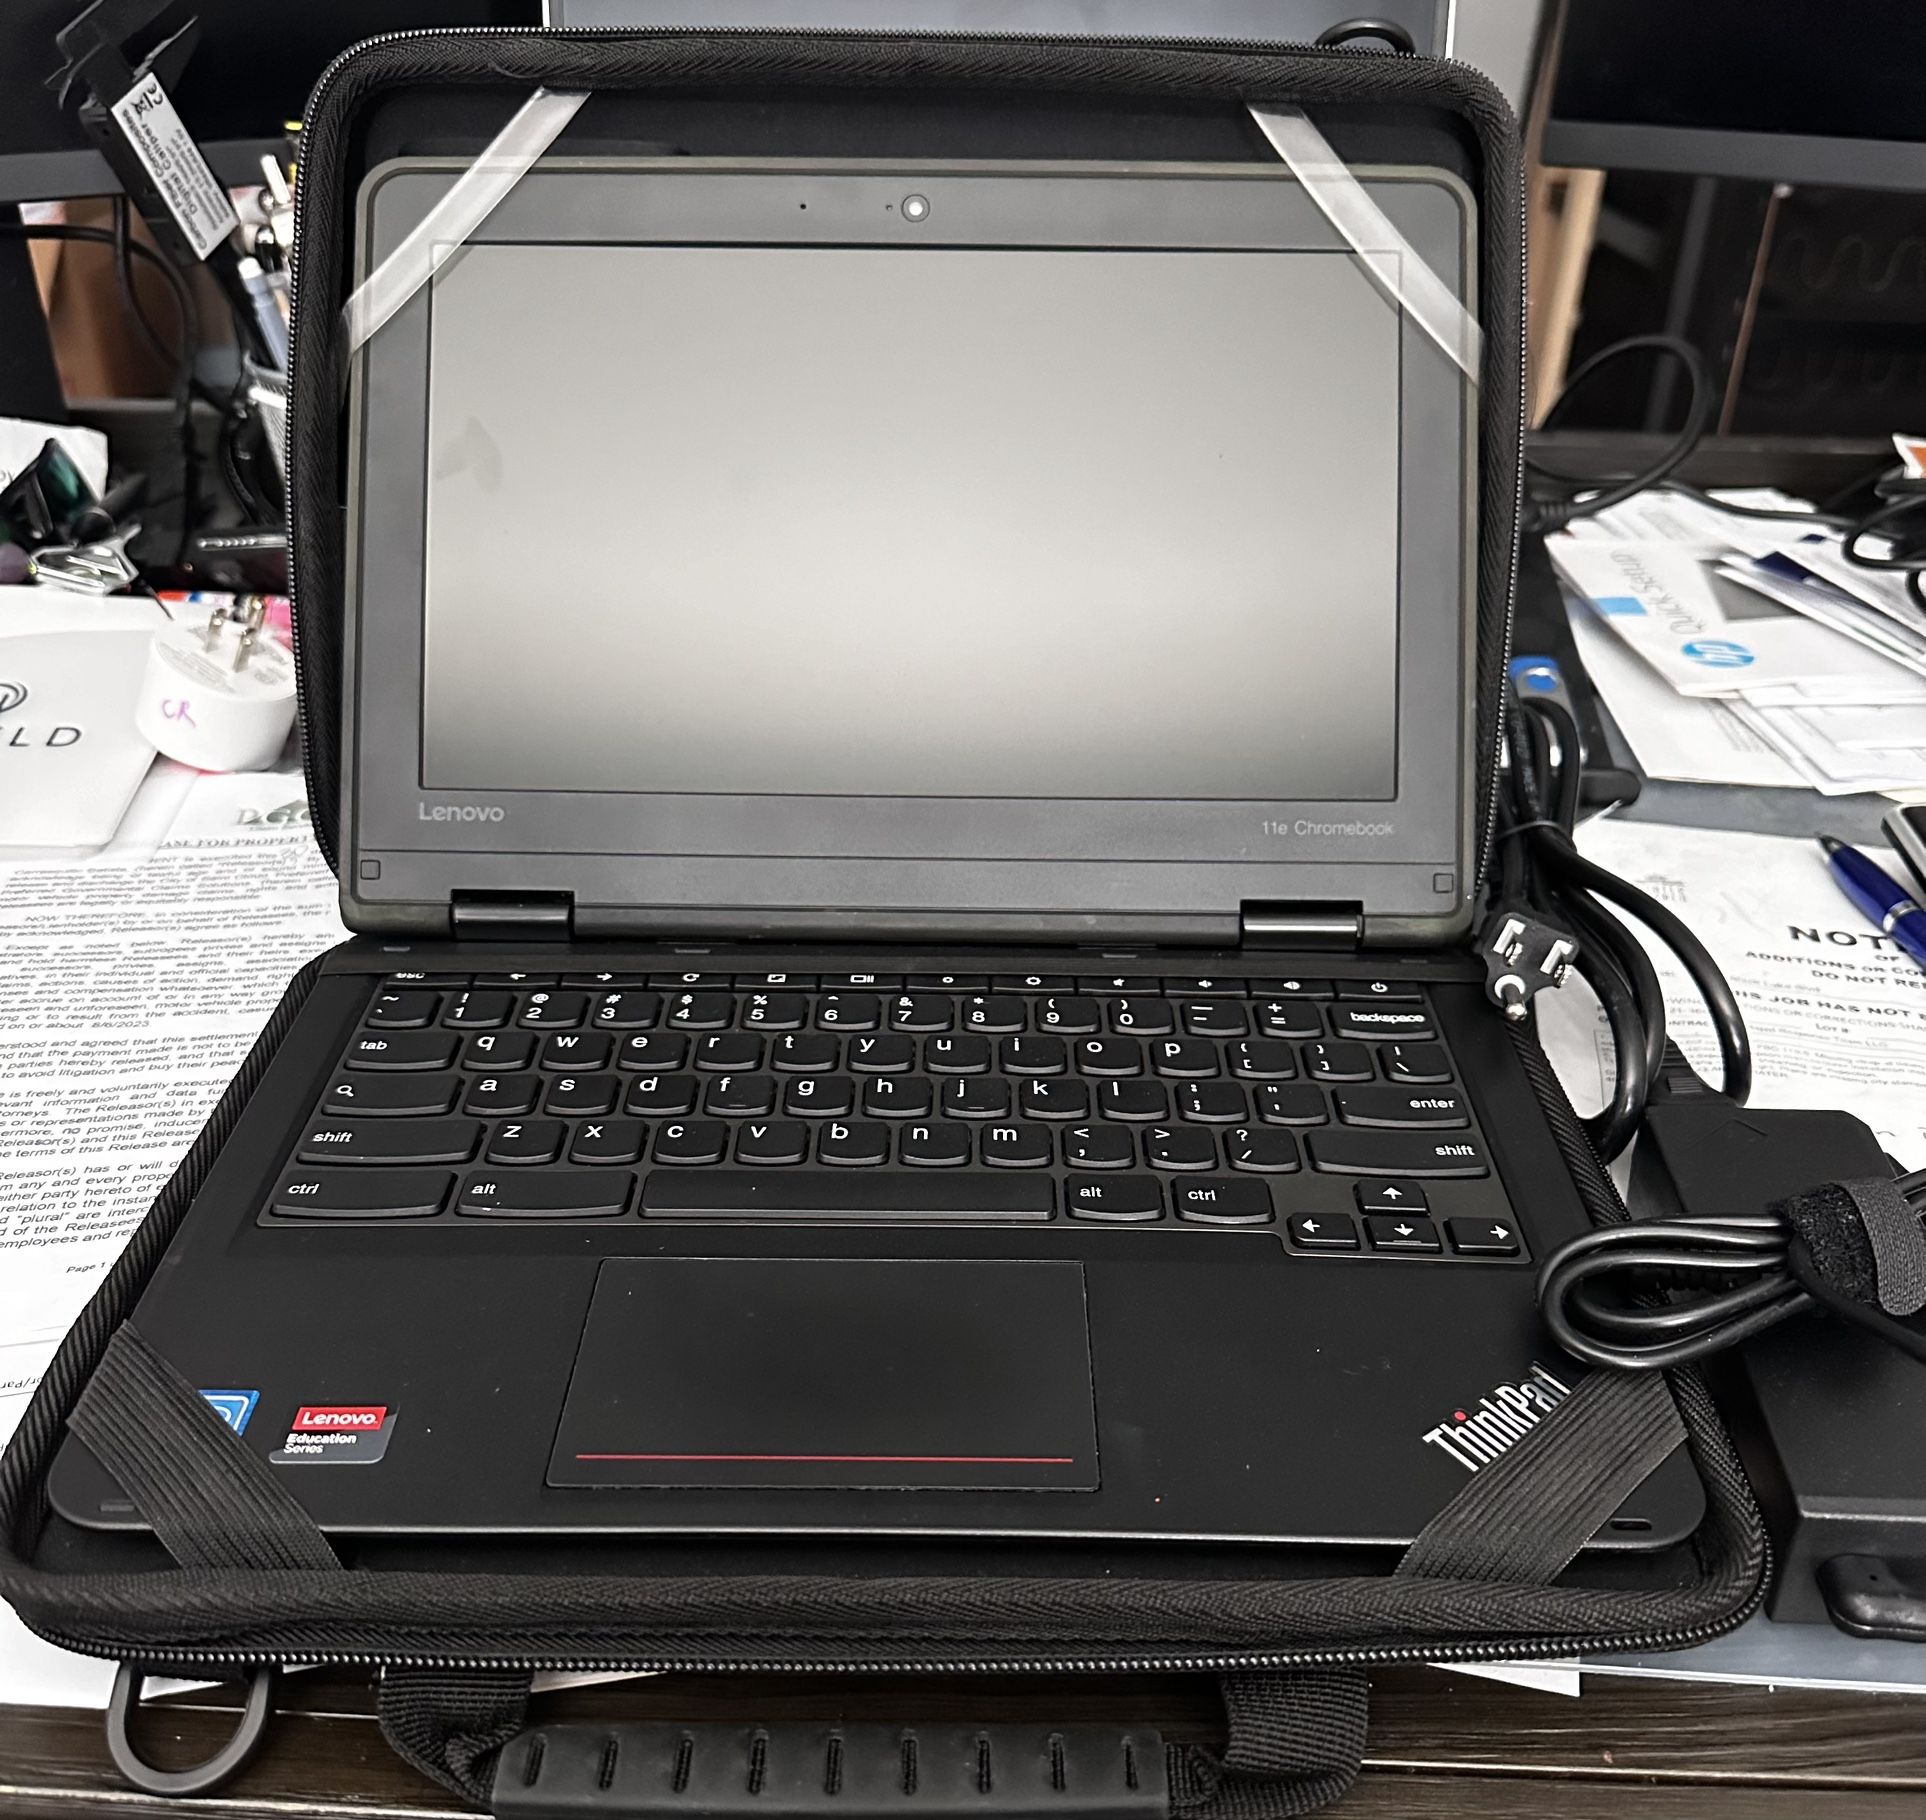 Lenovo 11e Chromebook Laptop With Bump Armor Case